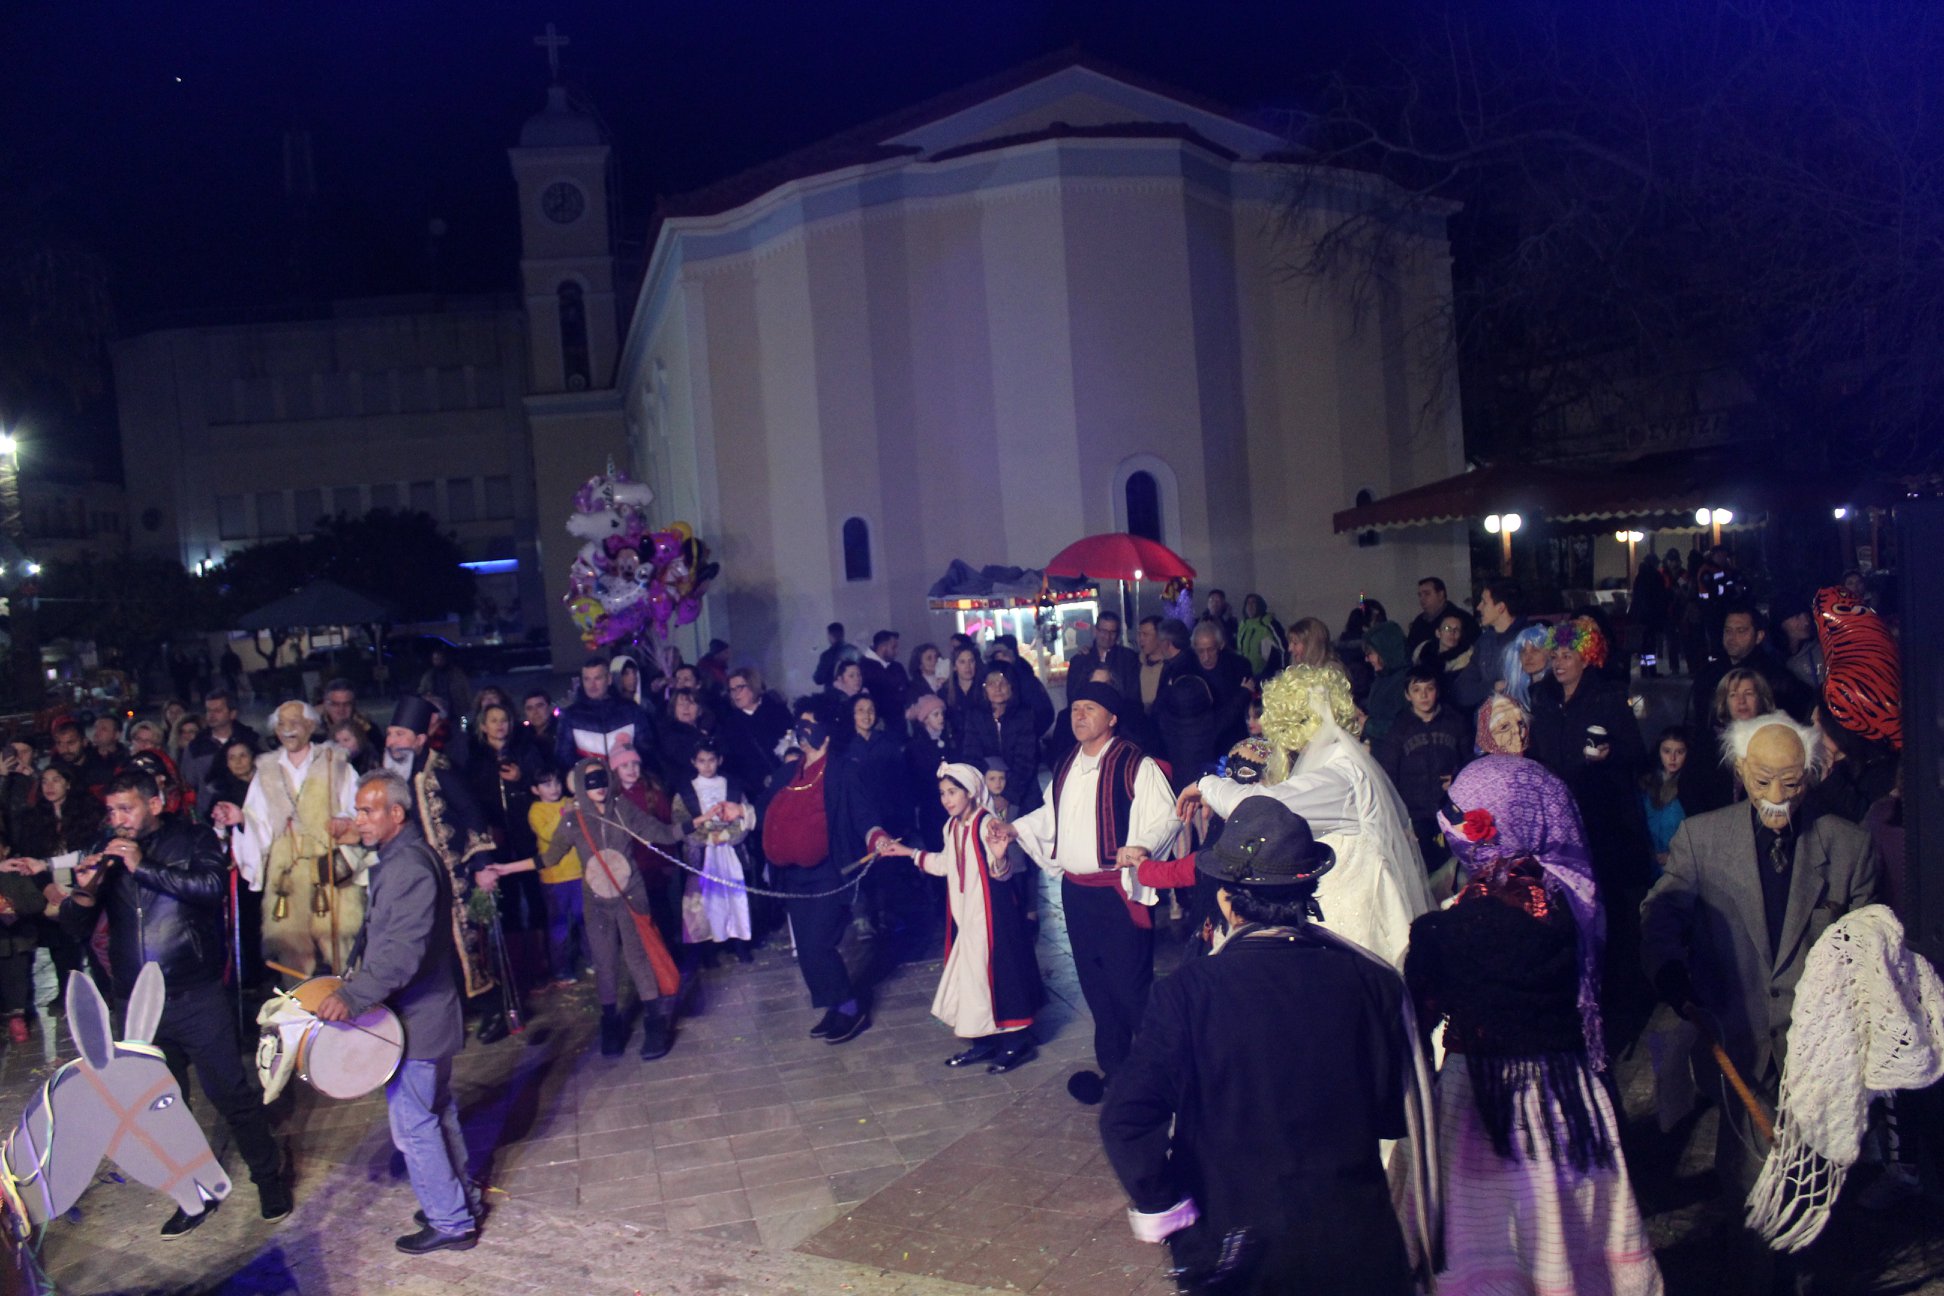 Δήμος Ήλιδας: Εντυπωσιακό ξεκίνημα για το Καρναβάλι της Αμαλιάδας - Ο τελάλης έδωσε το έναυσμα για να βγουν στους δρόμους και να διασκεδάσουν οι κάτοικοι της πόλης (Photos)